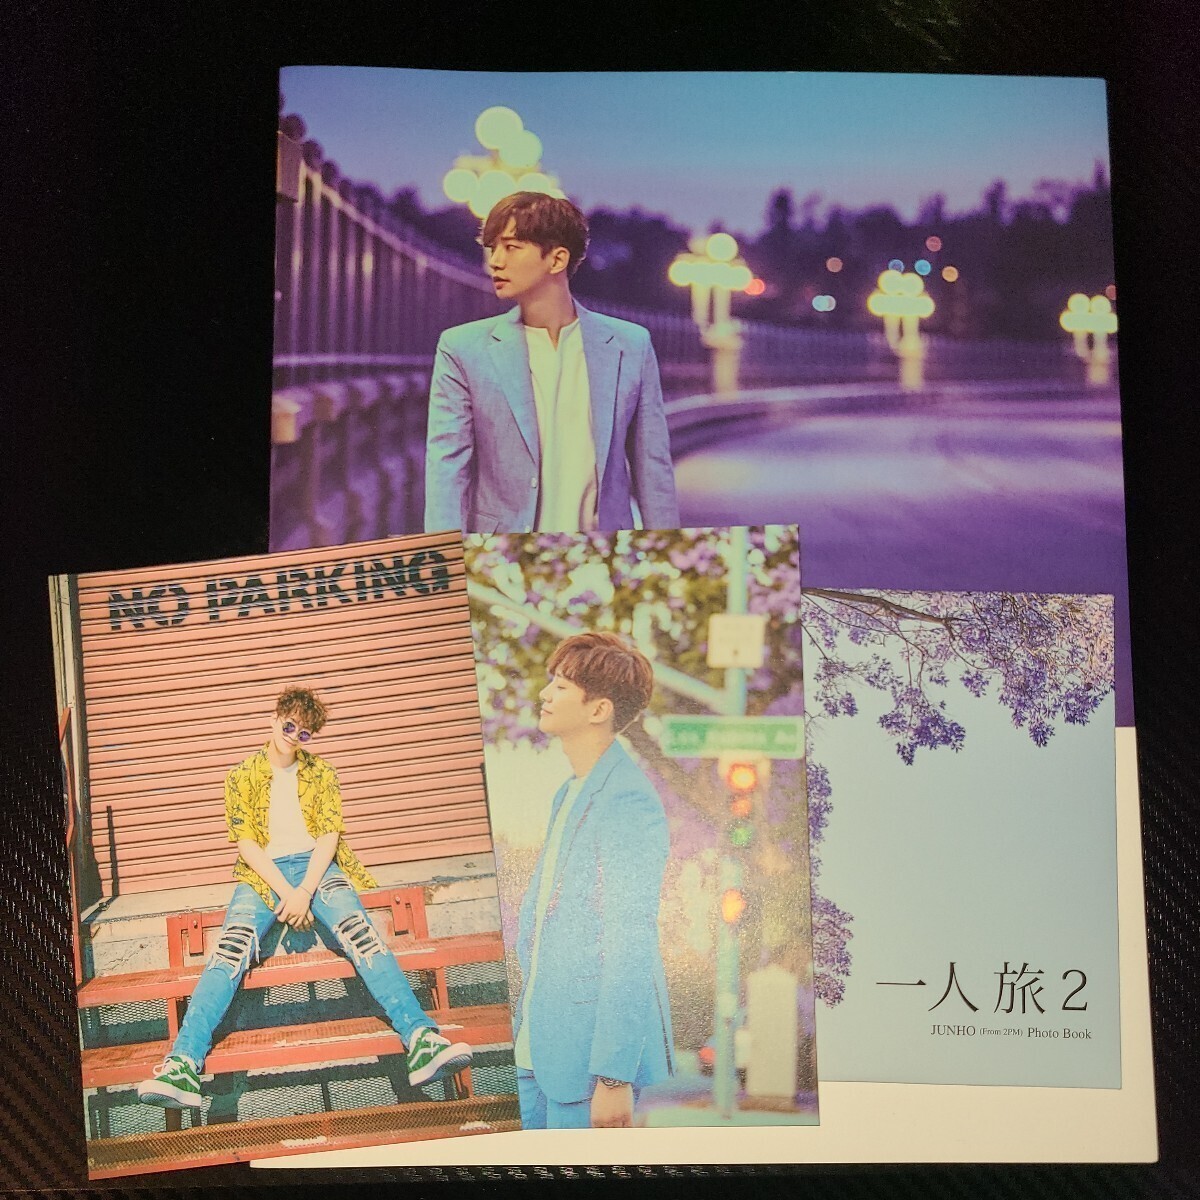 一人旅2 JUNHO From 2PM Photo Book 一人旅 DVD & 写真集 ジュノ フォトブック ポストカード付き_画像1